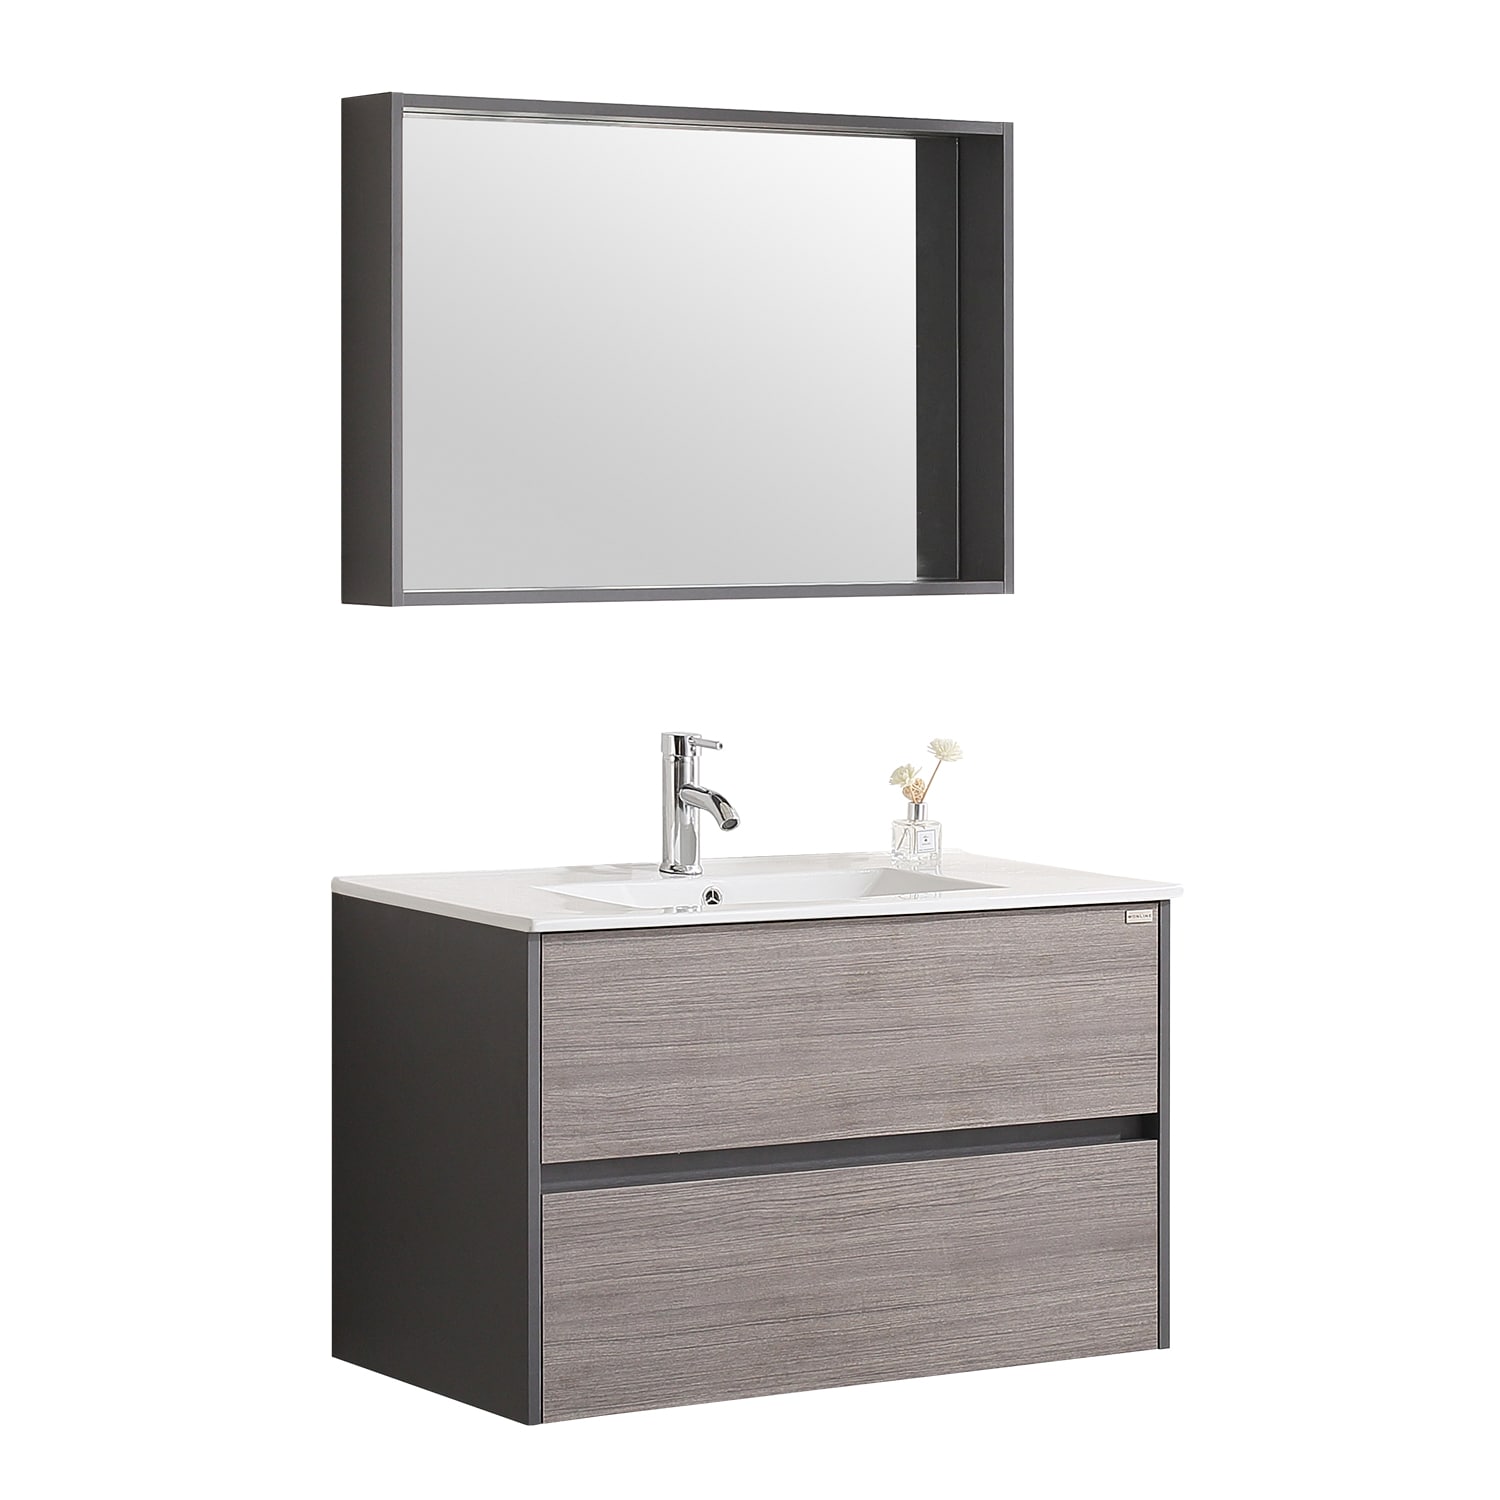 Walcut Single Sink Bathroom Vanity, 24 Inch Bathroom Vanity Set With Mirror